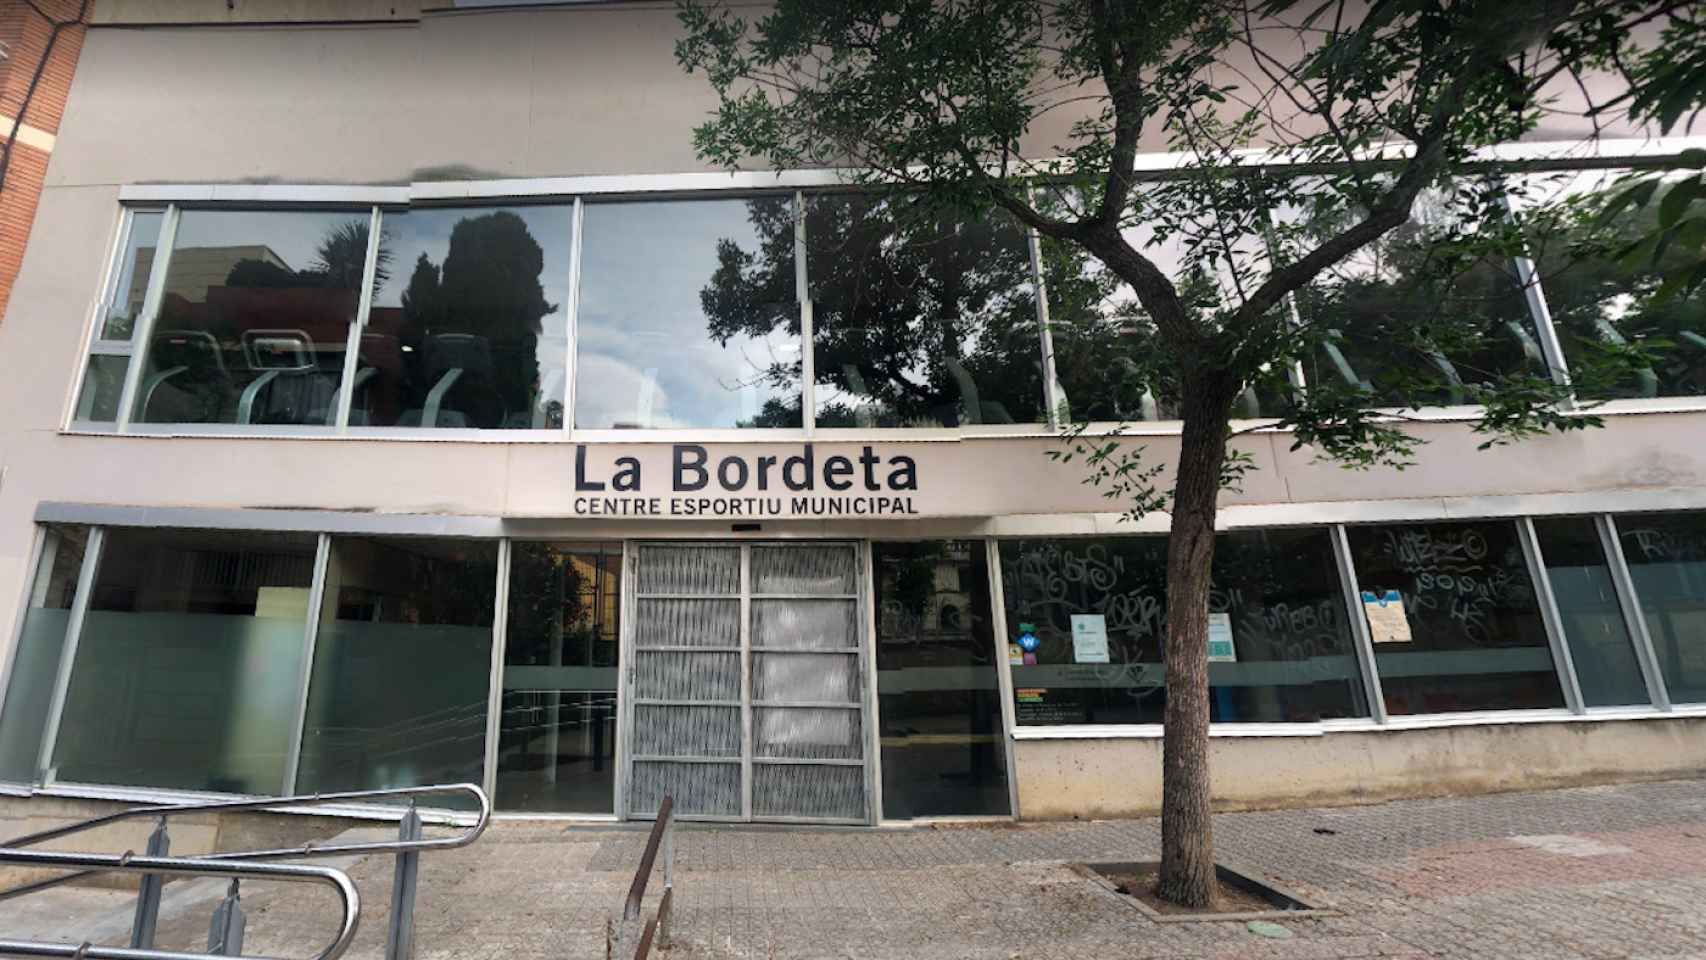 Fachada del centro deportivo municipal La Bordeta, donde se subirán los precios / GOOGLE MAPS